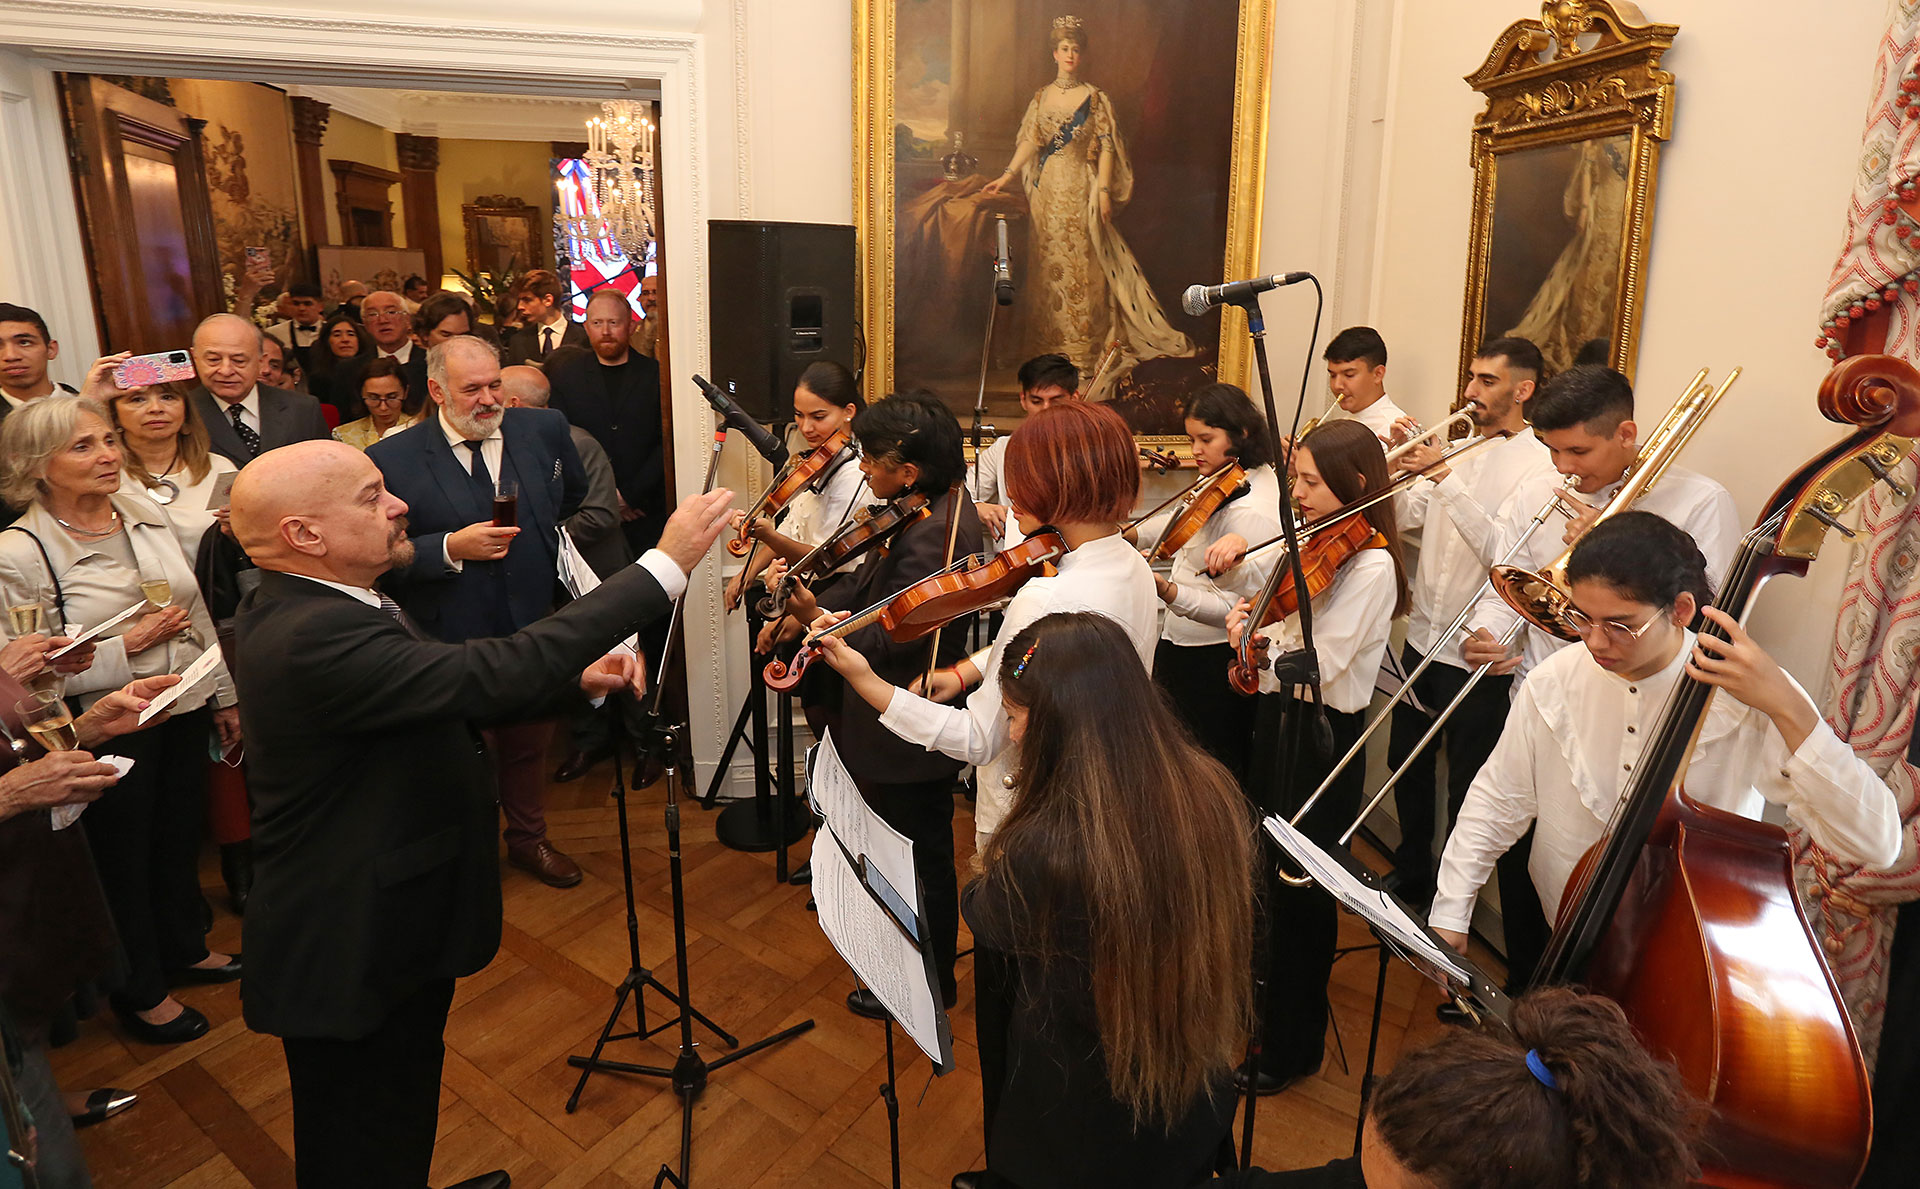 La ejecución del himno británico estuvo a cargo de la Orquesta de los Barrios, formada por músicos jóvenes de distintos barrios de la ciudad de Buenos Aires y bajo la conducción de Néstor Tedesco